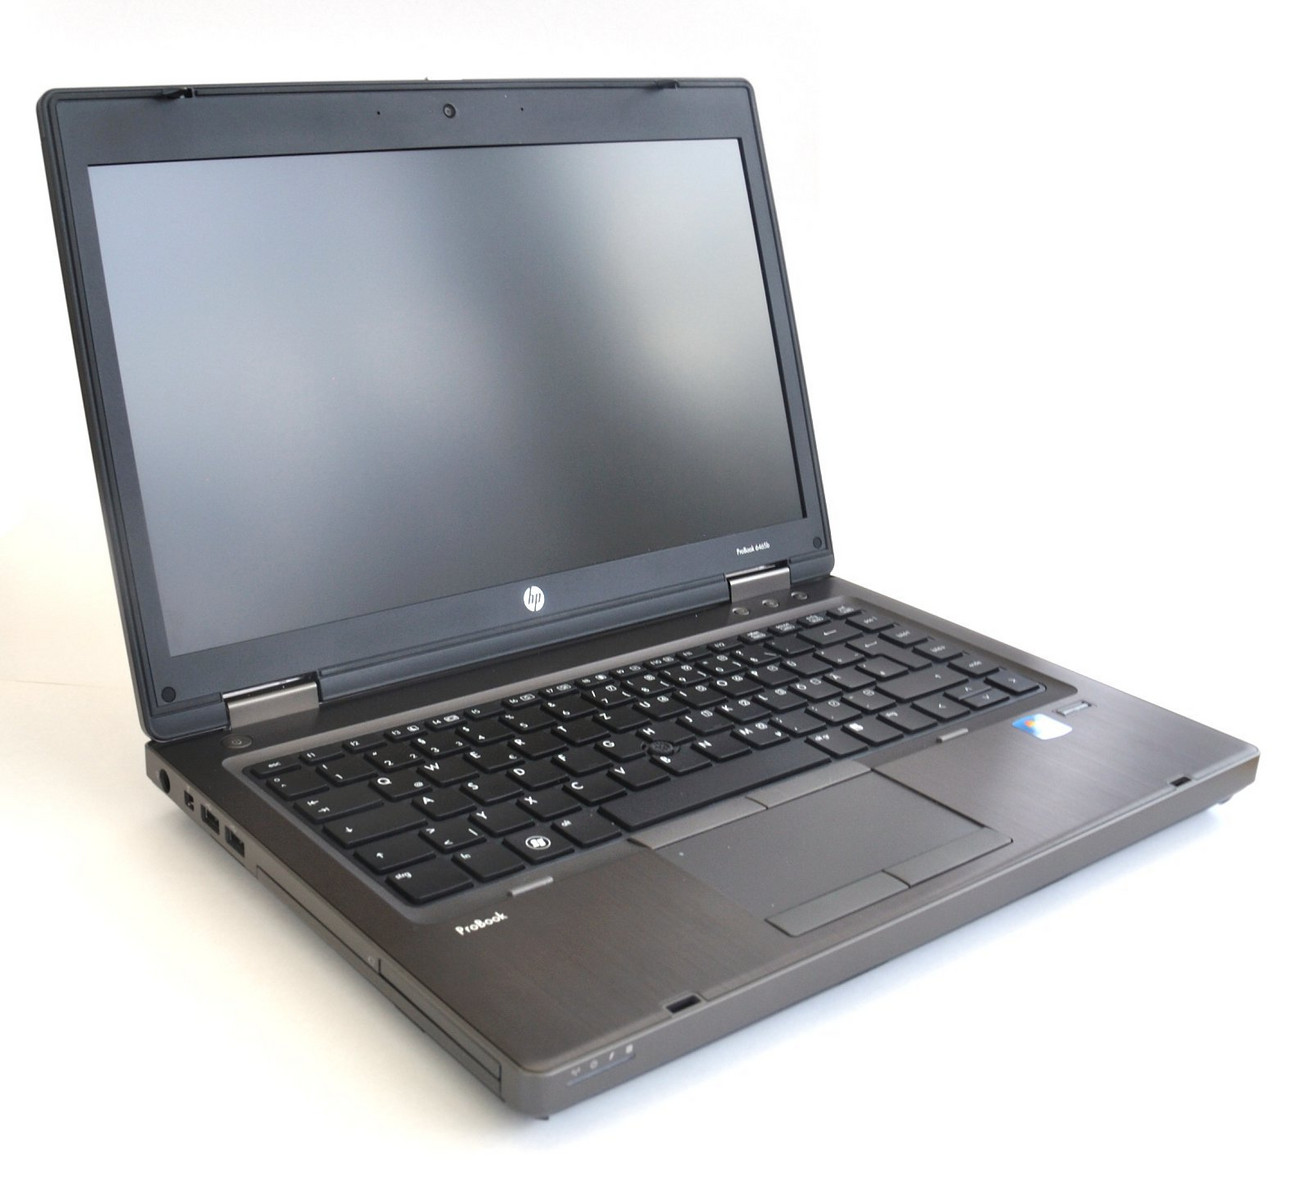 HP ProBook 6465b LY433EA - Notebookcheck.net External Reviews